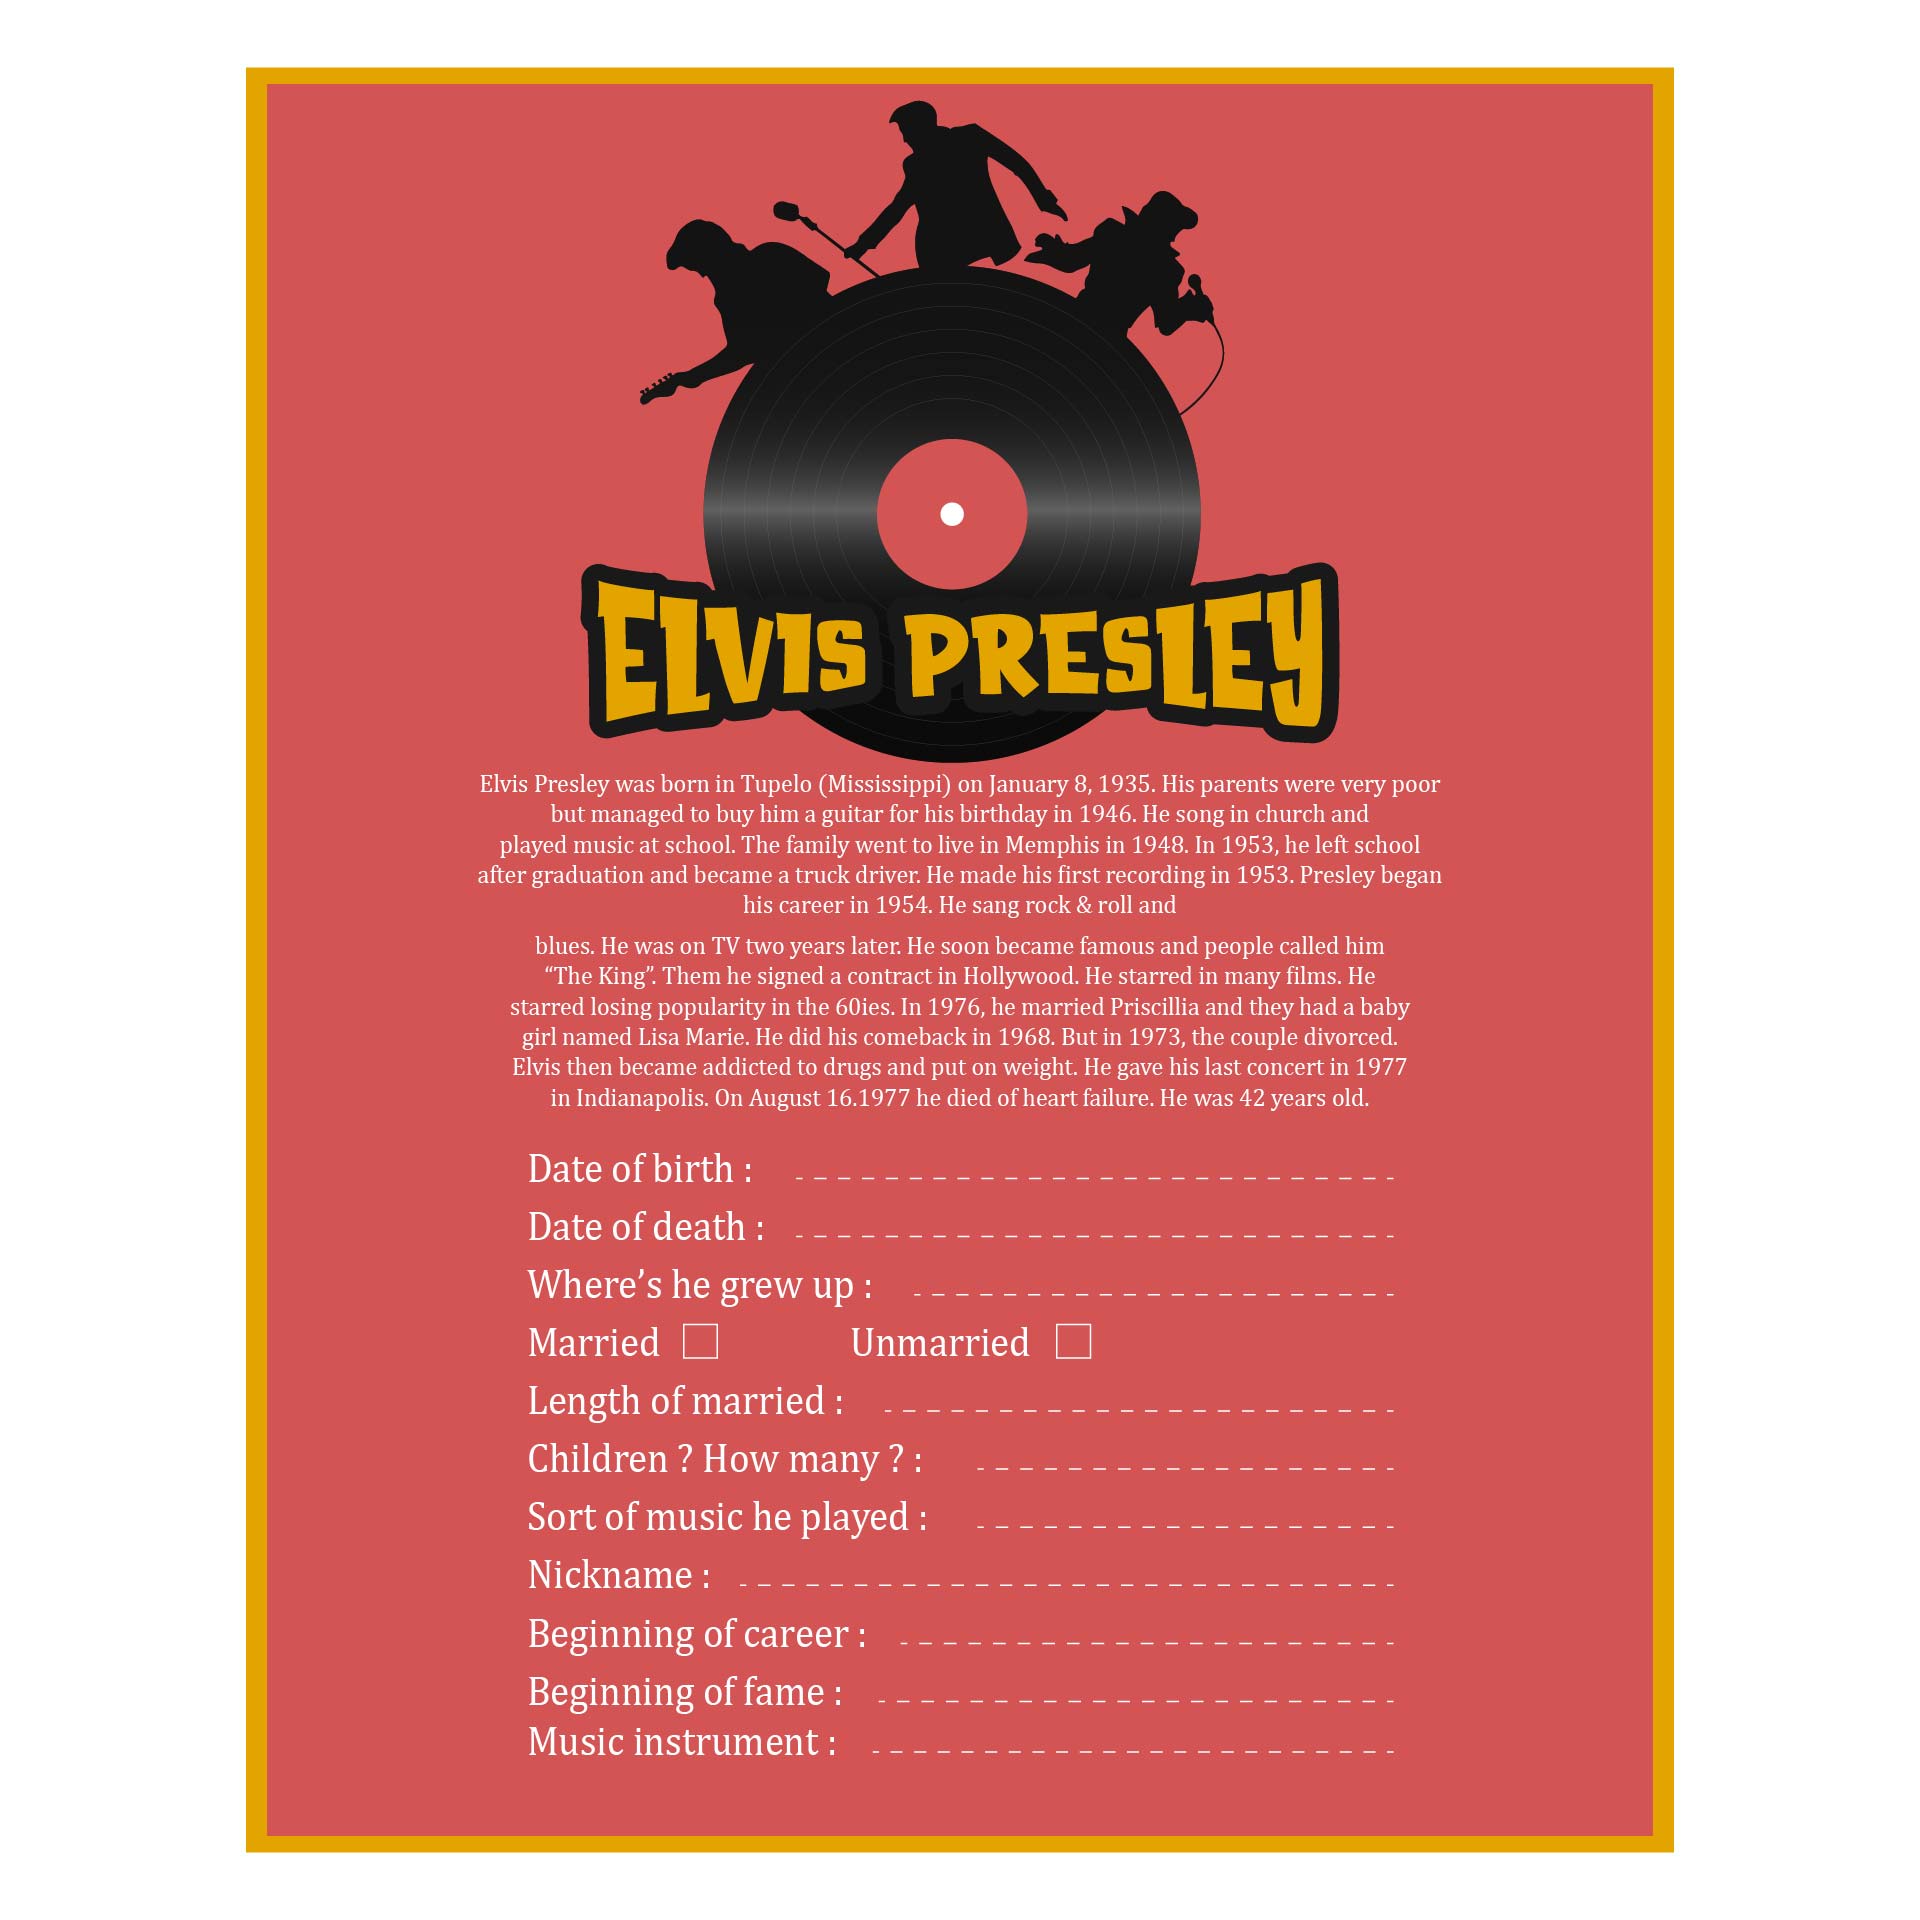 Elvis Presley Worksheet Printables